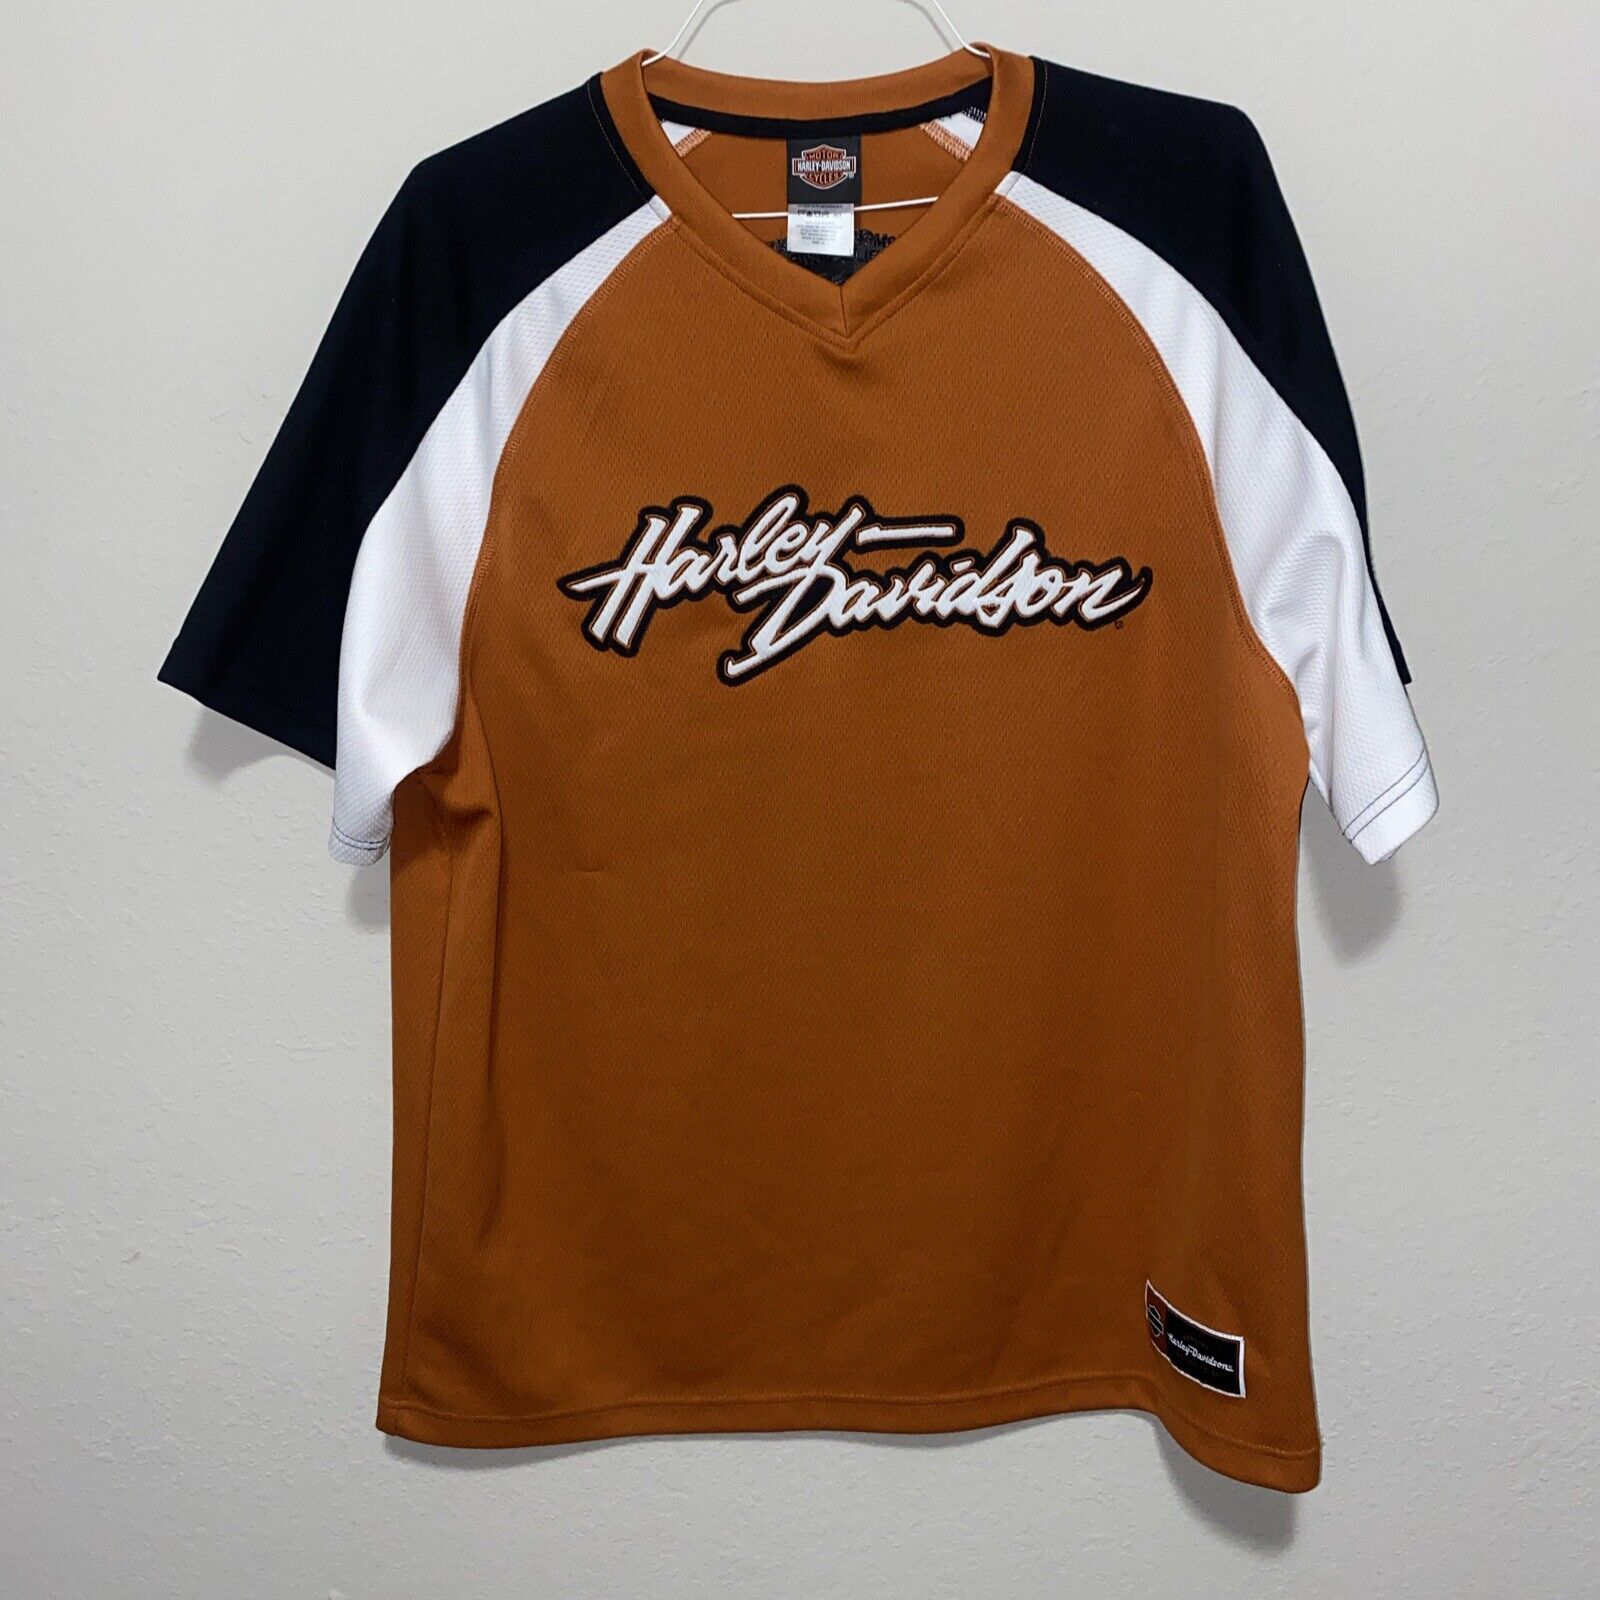 Harley Davidson Men’s Embroidered V-Neck Jersey Shirt Size XL